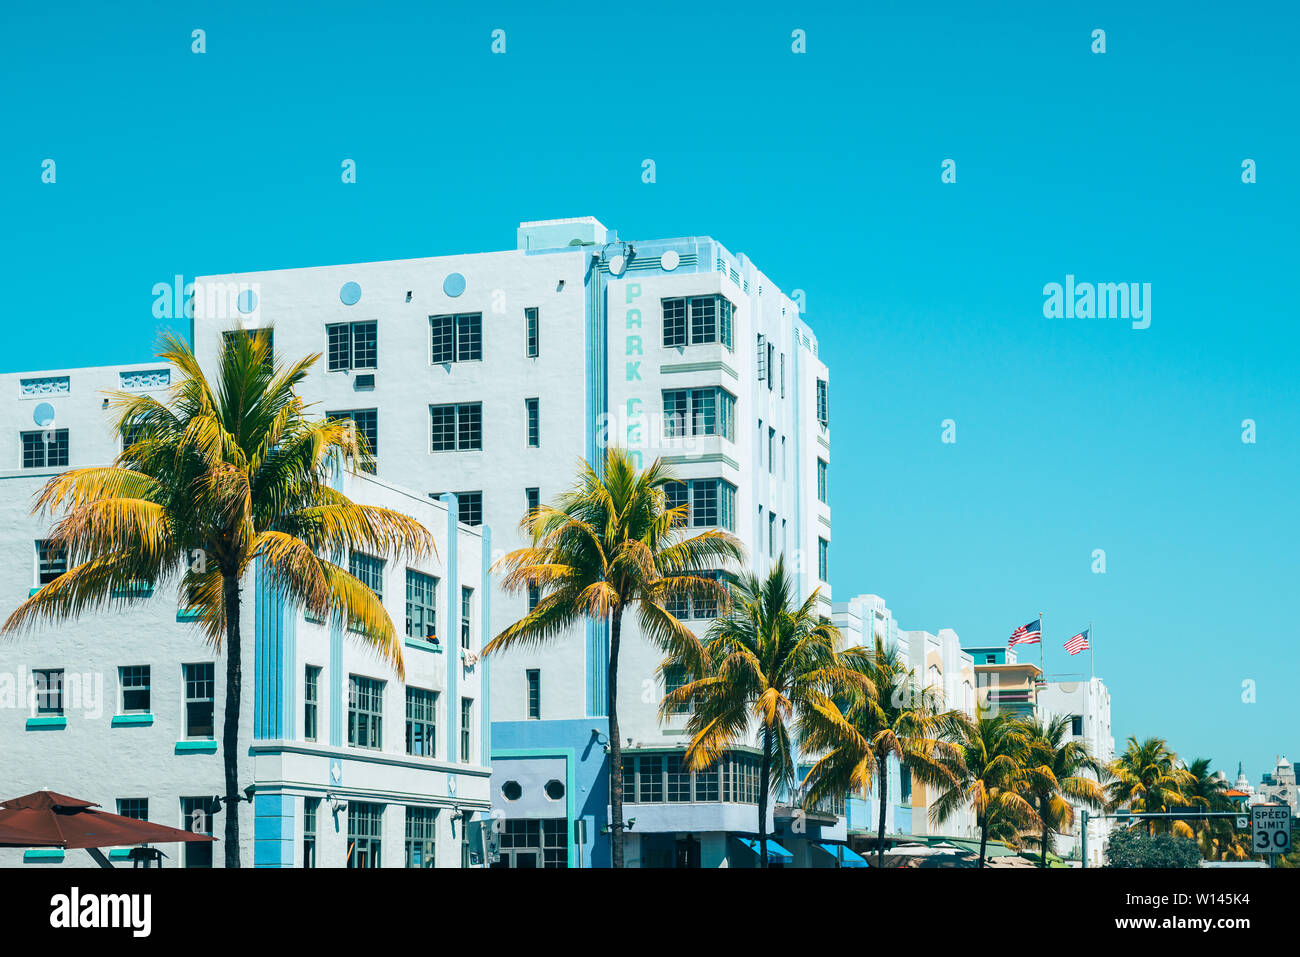 Park Central Hotel à Miami South Beach Floride USA Banque D'Images